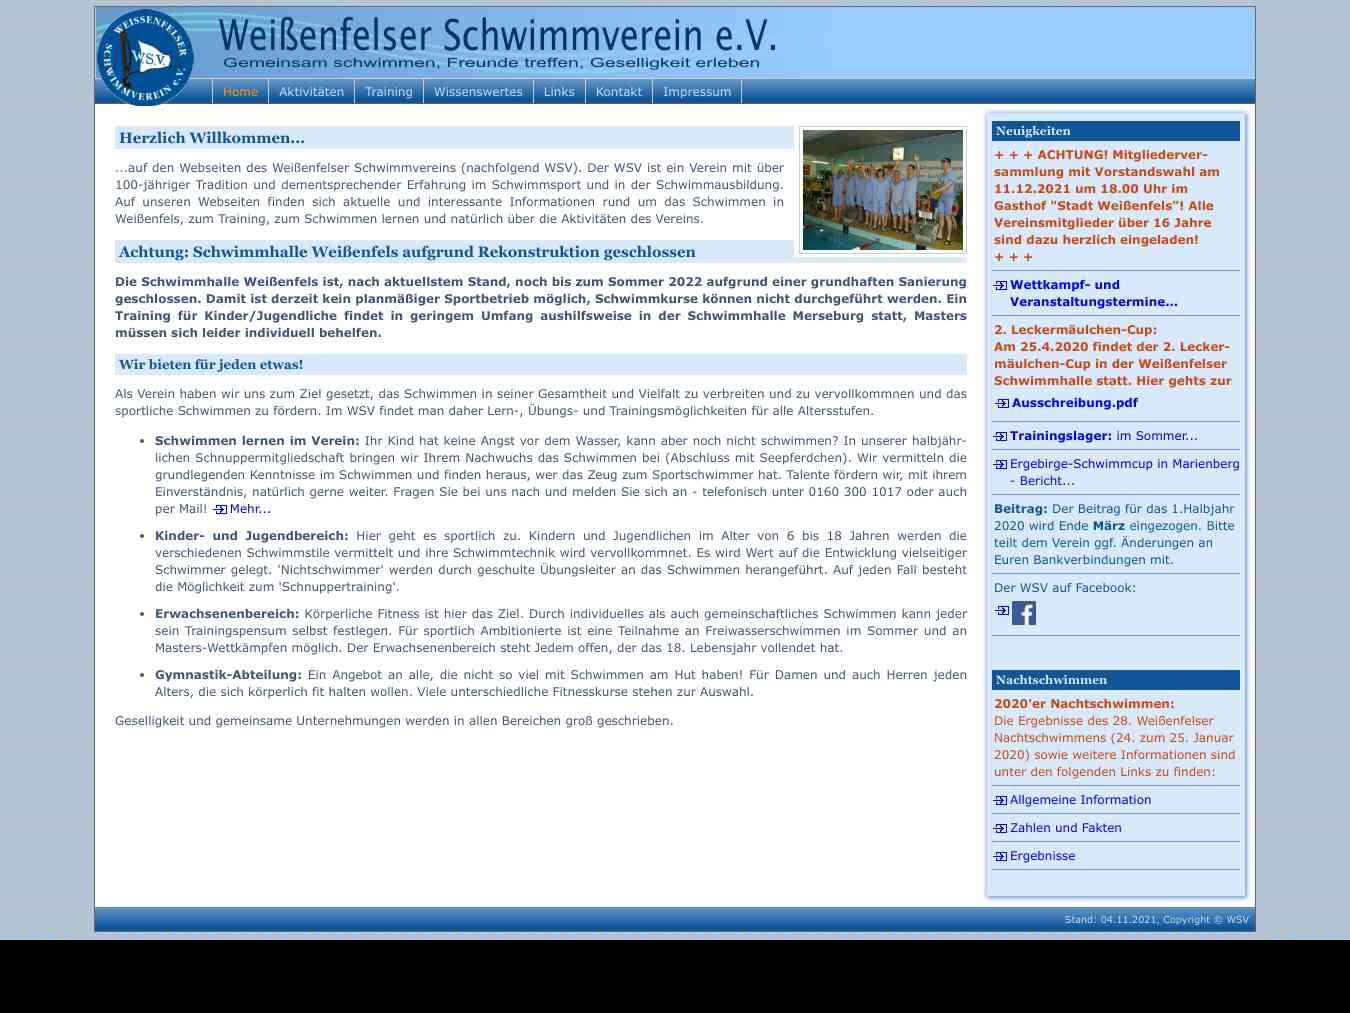 Veranstalterhomepage - http://www.weissenfelser-schwimmverein.de